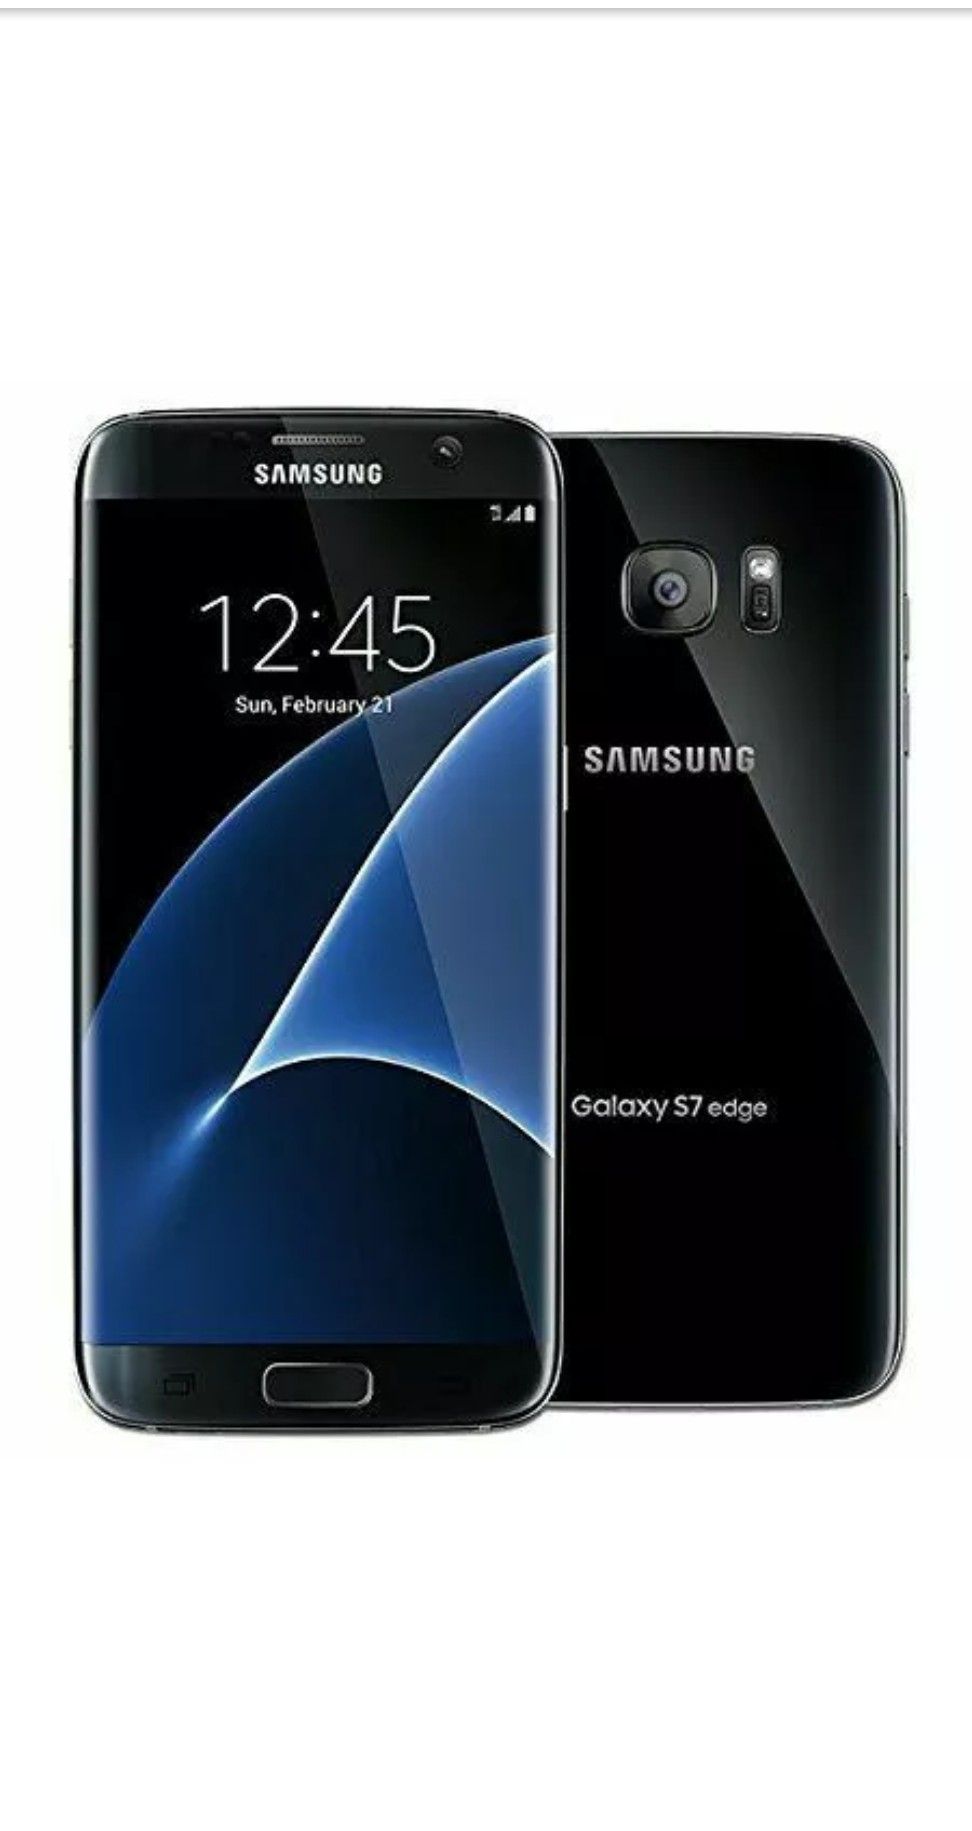 Samsung galaxy S7 edge unlocked 32G. Desbloqueado como nuevo